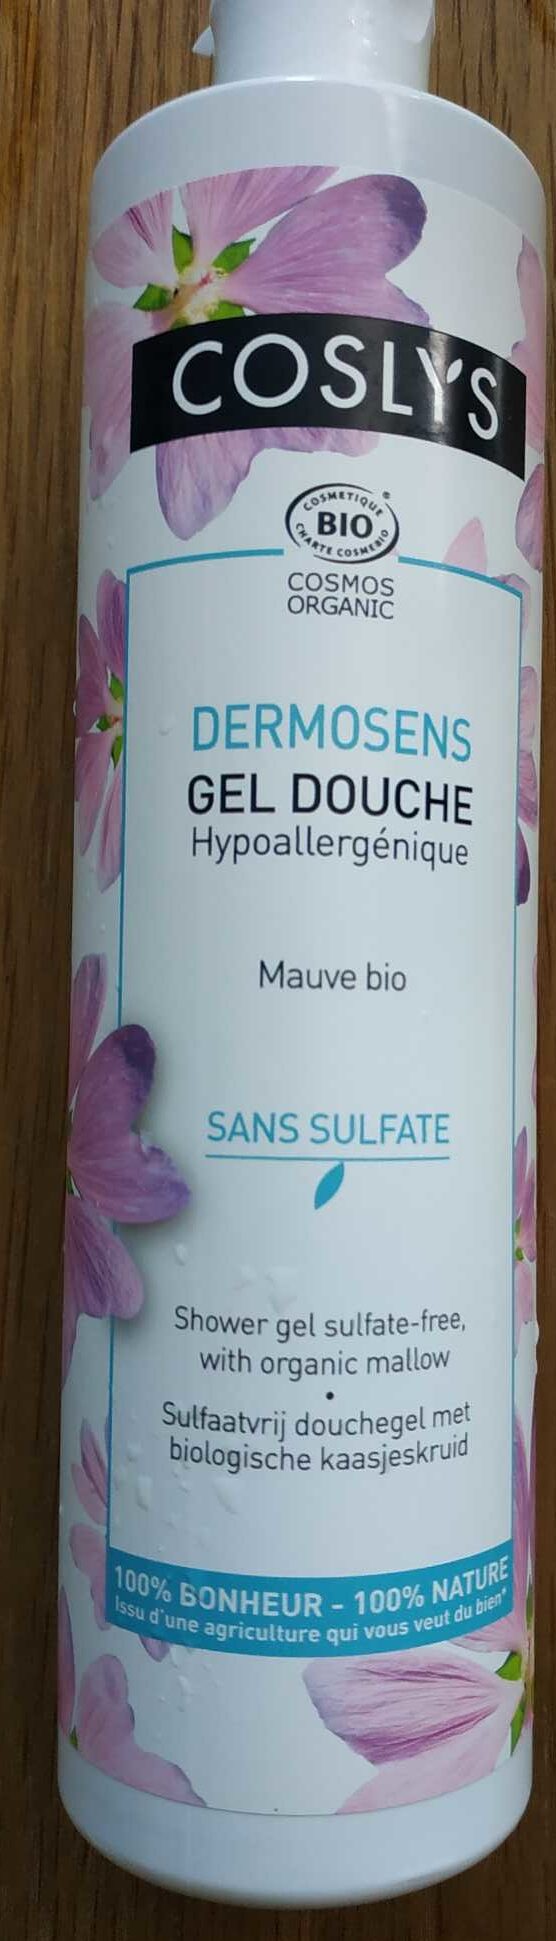 Gel Douche - Haute tolérance - Mauve bio - Product - fr